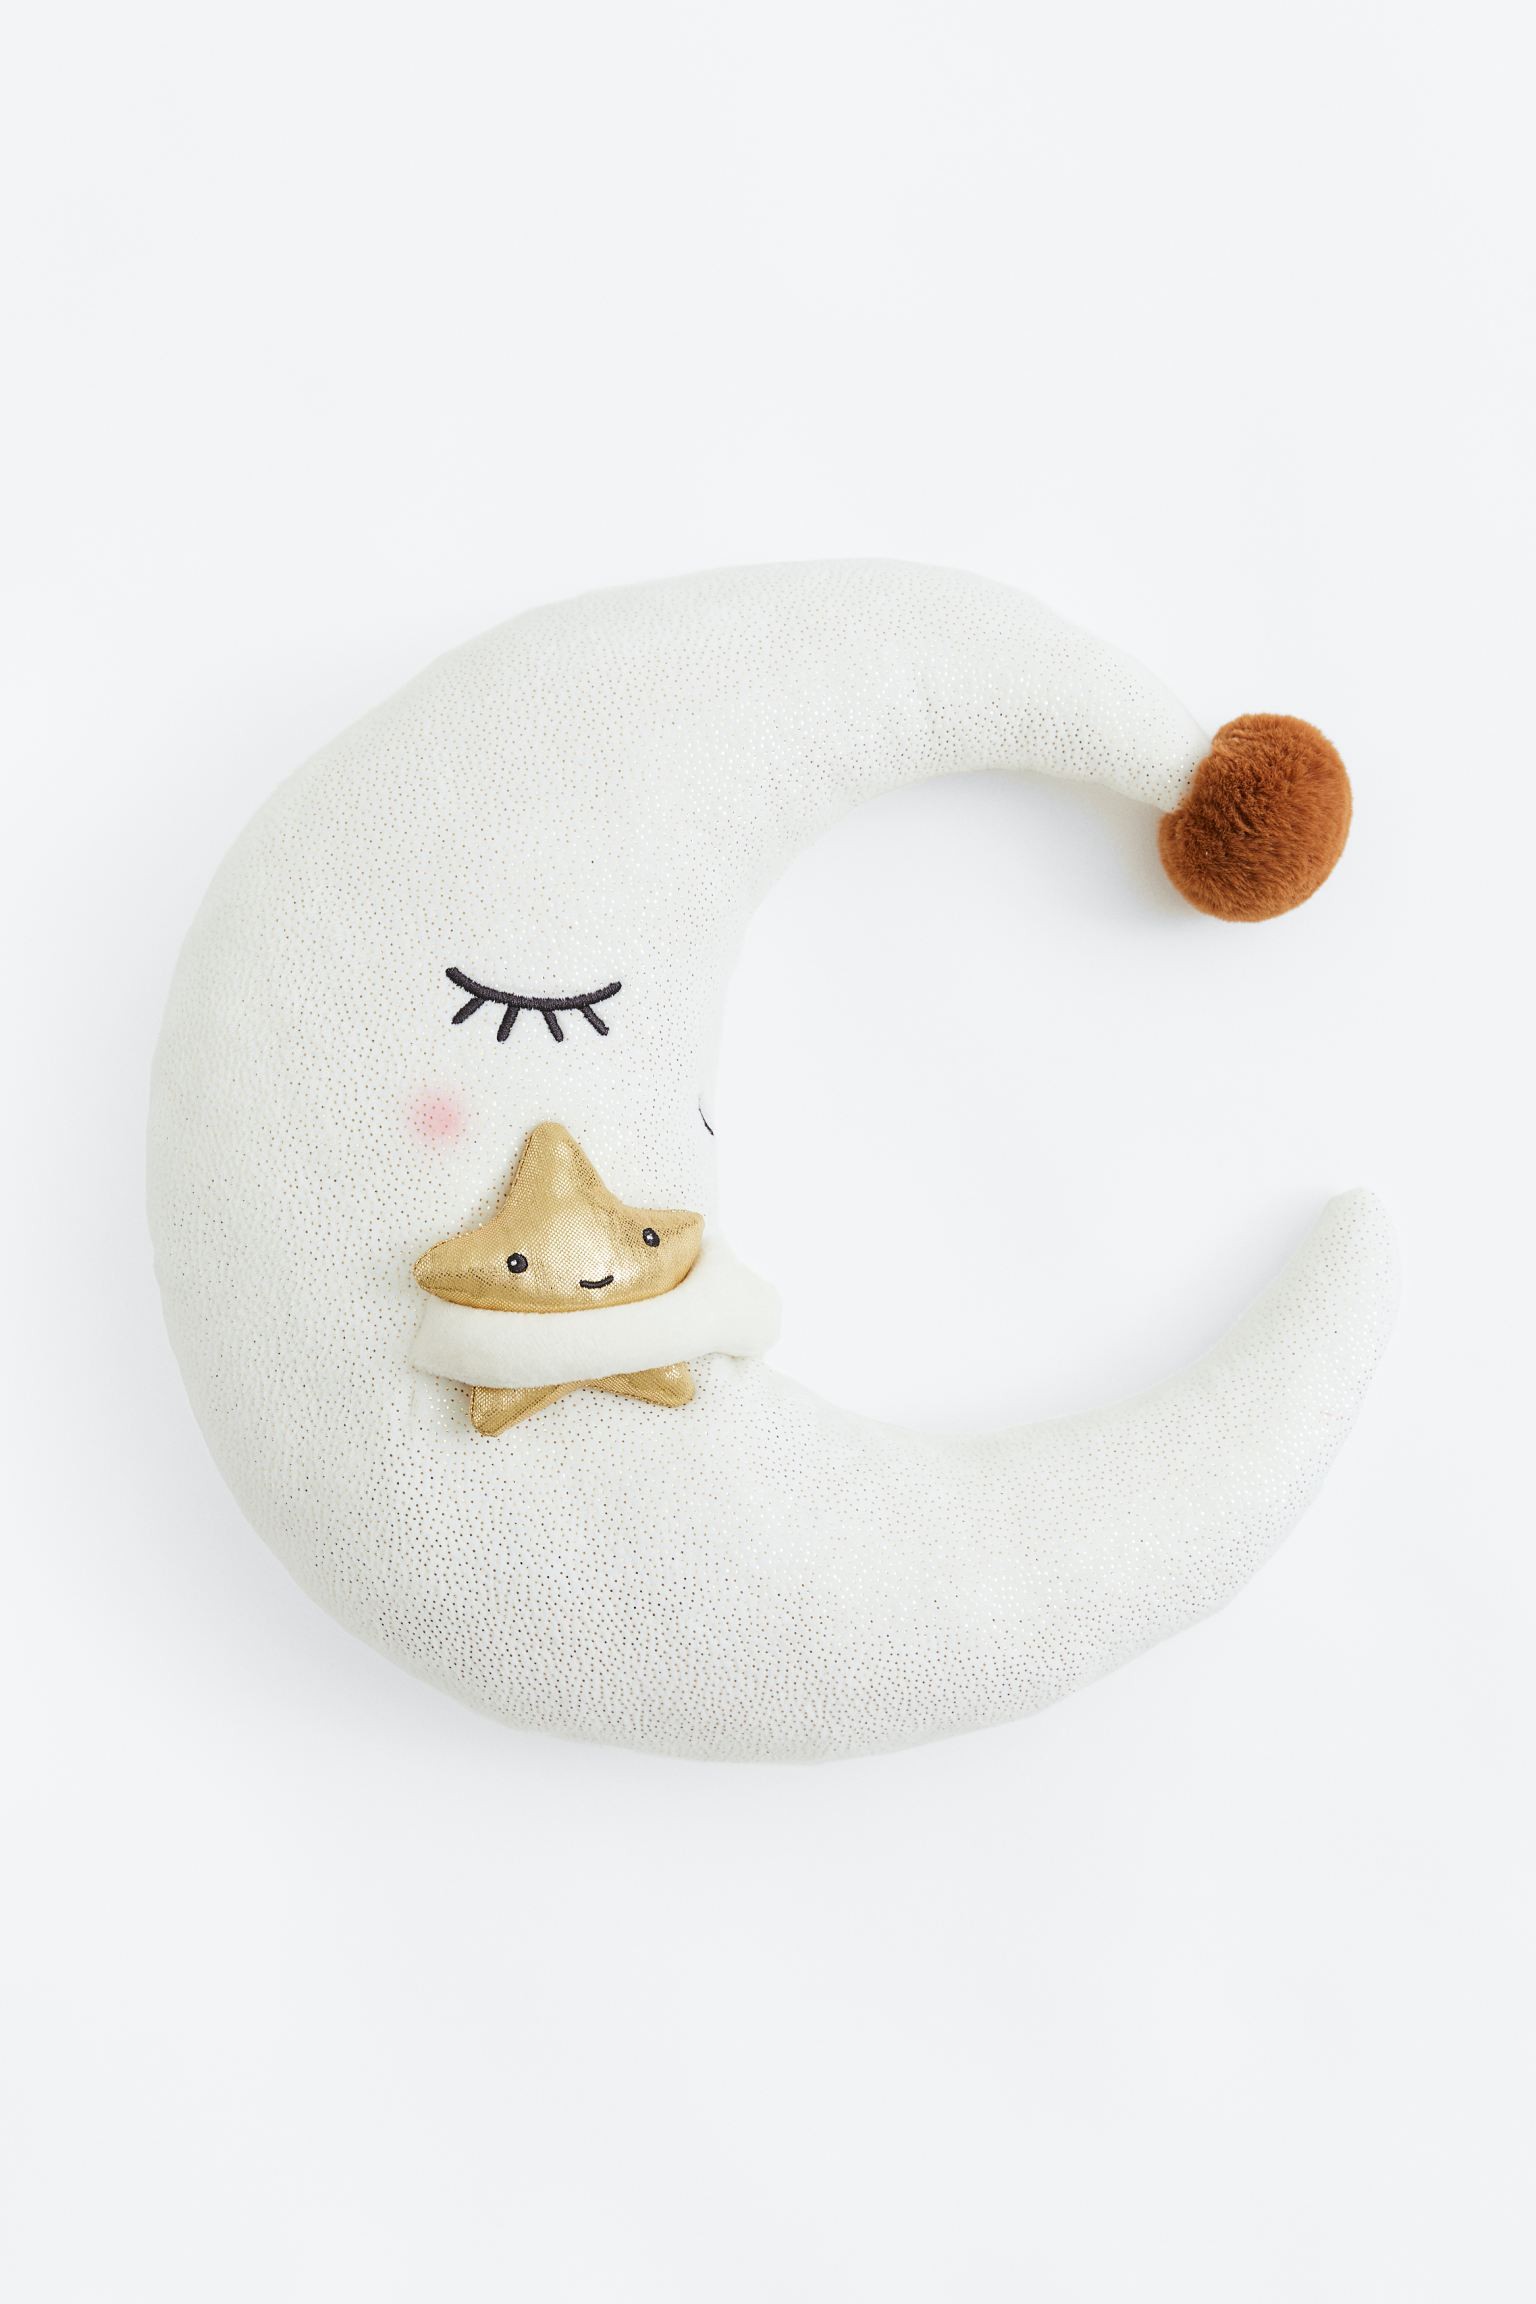 H&M Home Мягкая игрушка в форме луны, Белая Луна 1109225001 | 1109225001